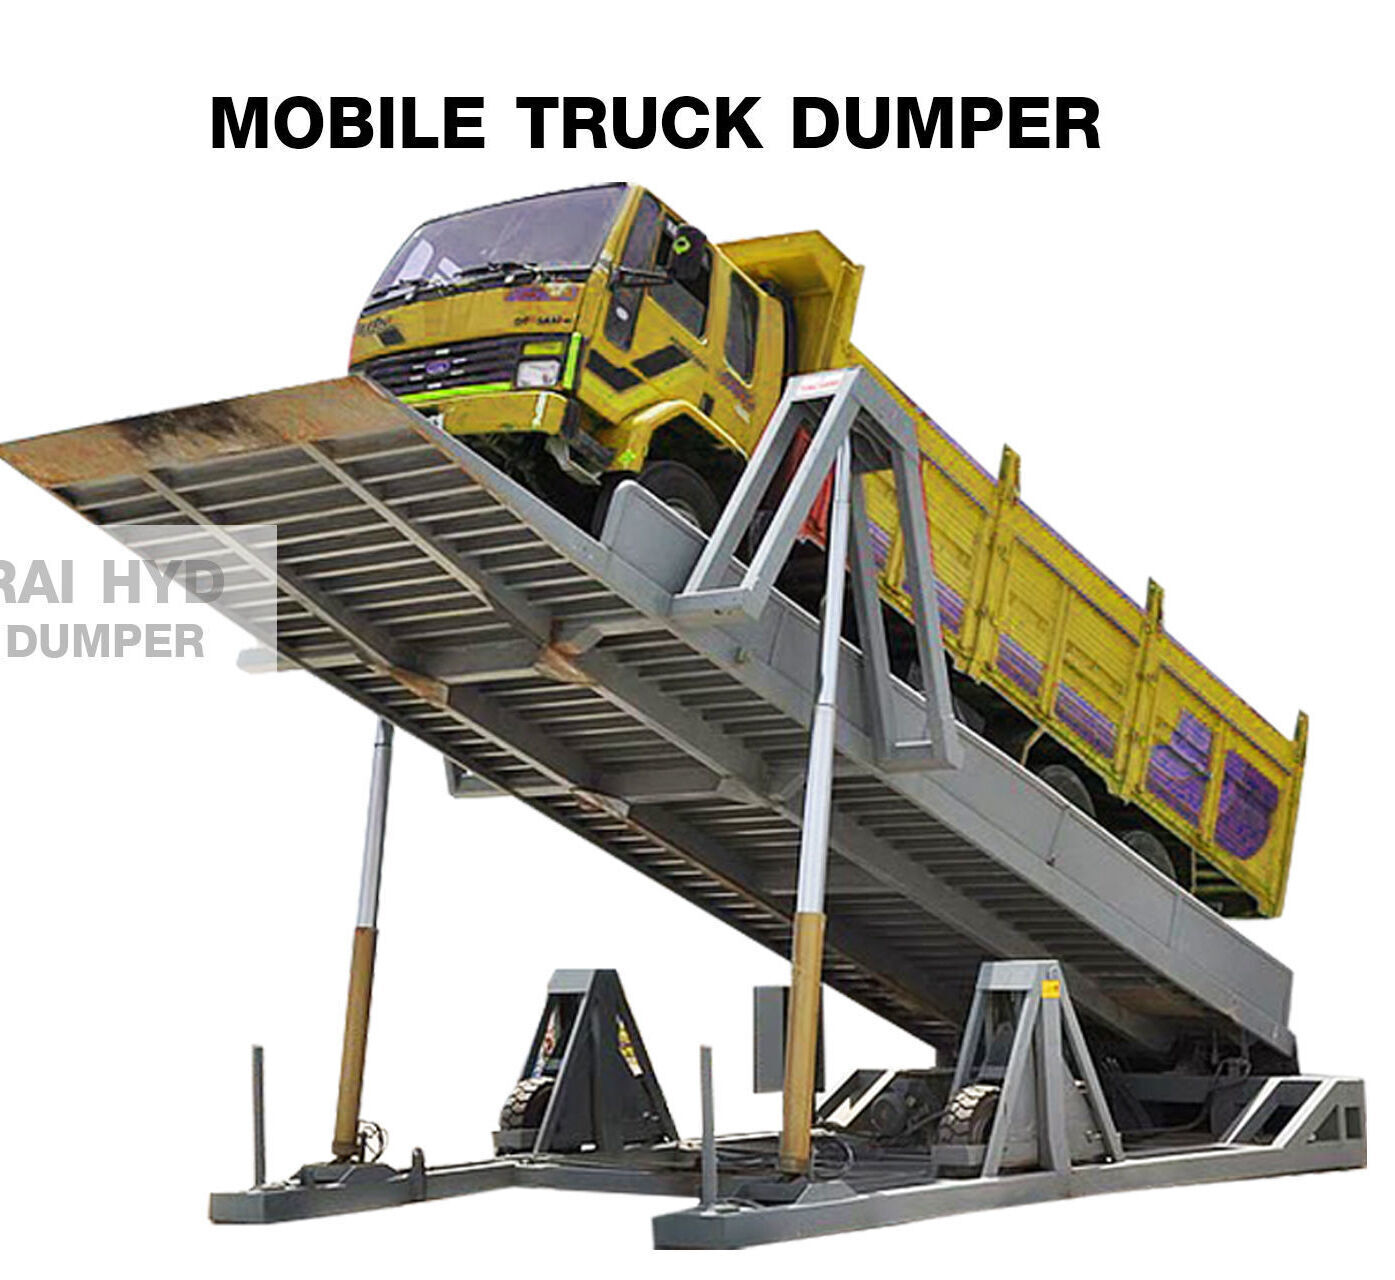 Truck Dumper ถูกนำไปใช้งานในอุตสาหกรรมอะไรบ้าง